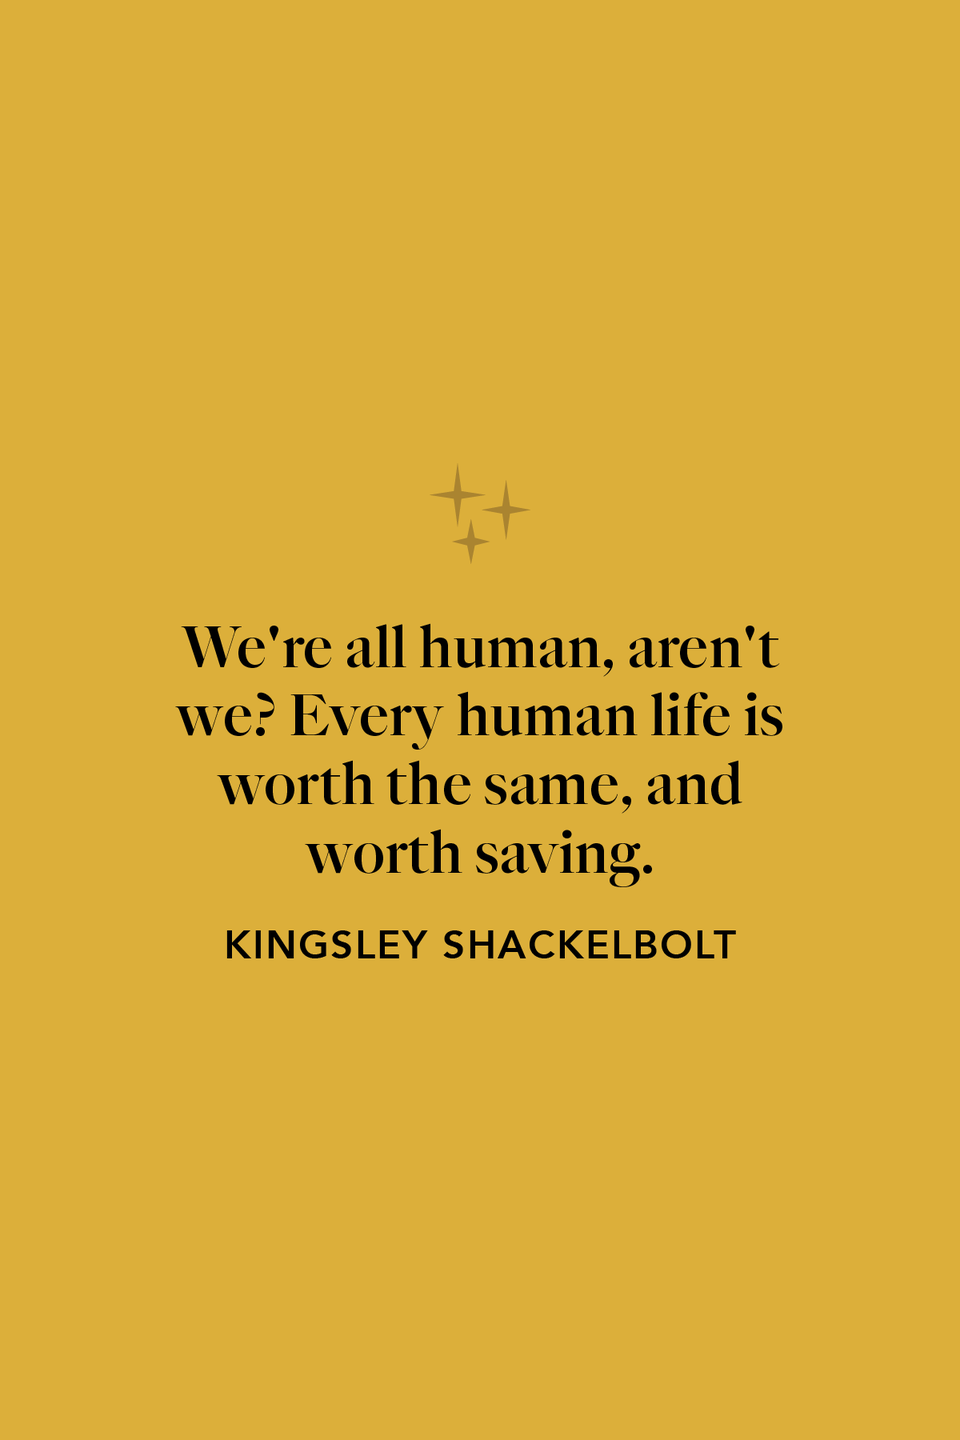 Kingsley Shacklebolt on the value of life